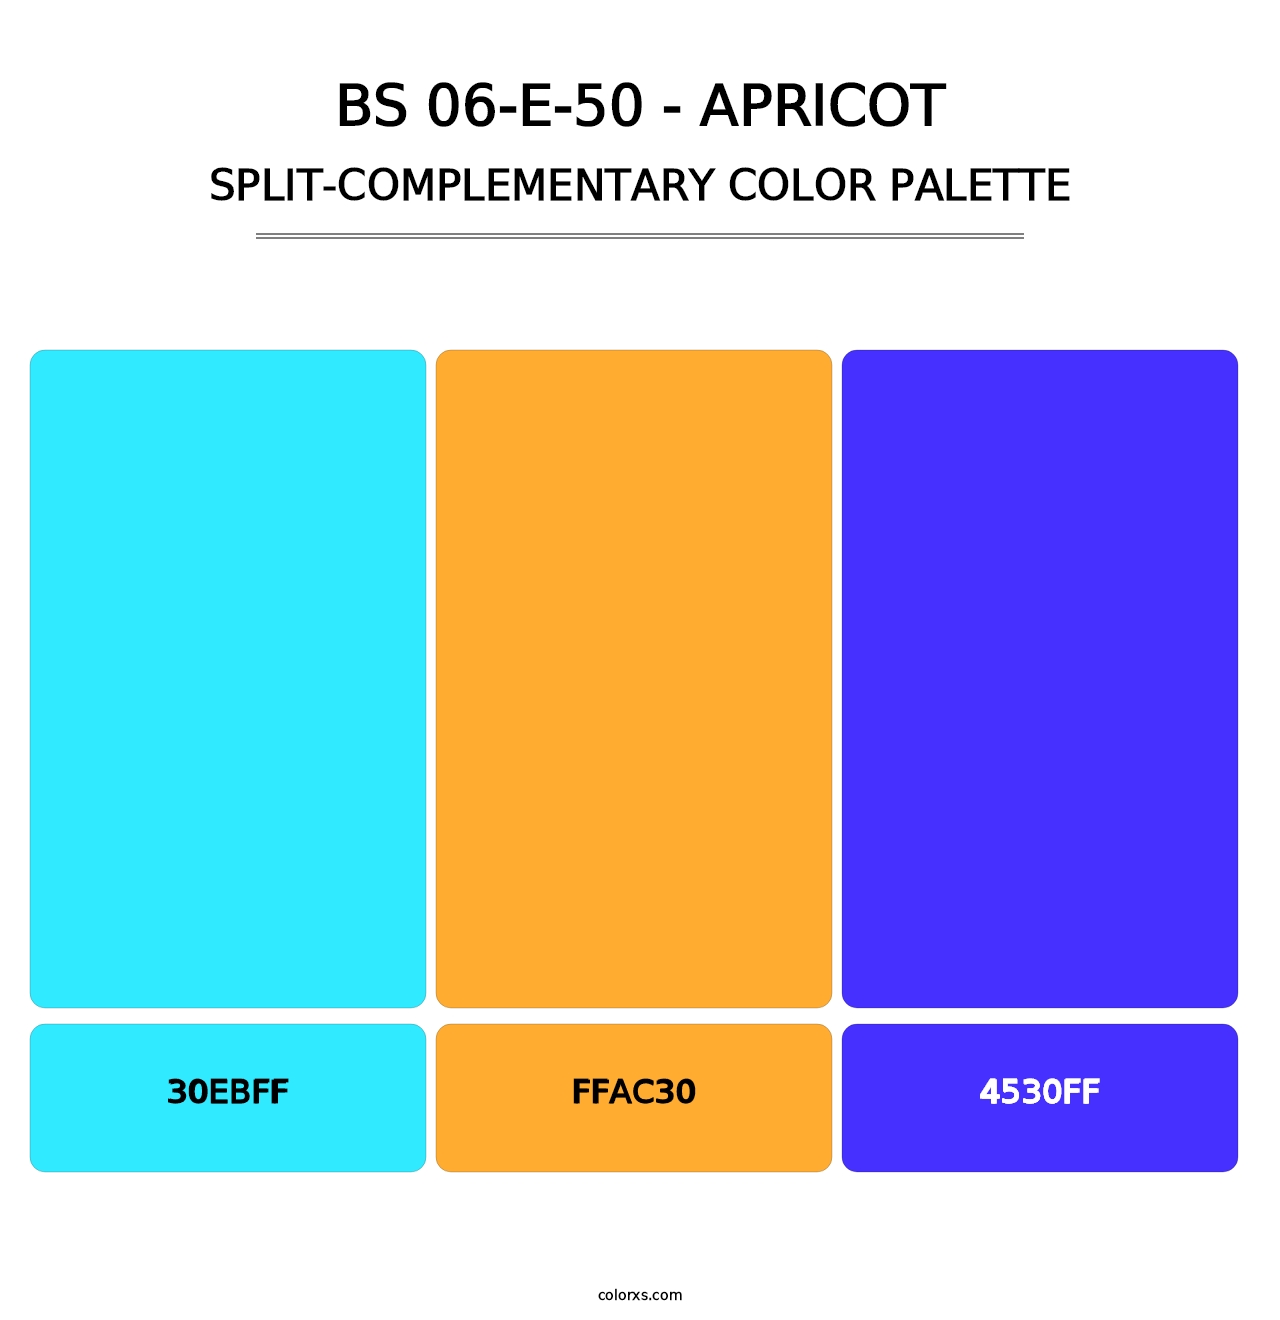 BS 06-E-50 - Apricot - Split-Complementary Color Palette